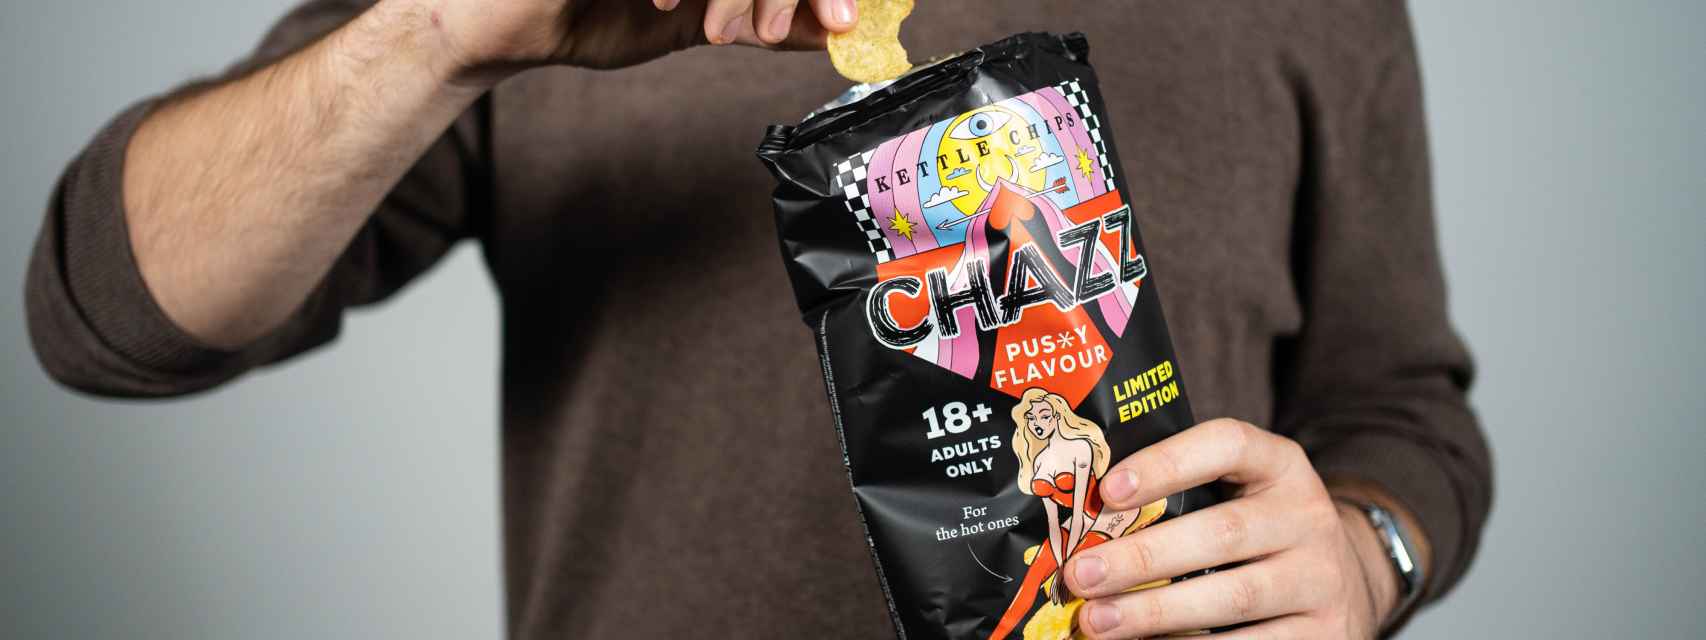 Las nuevas patatas de la marca Chazz